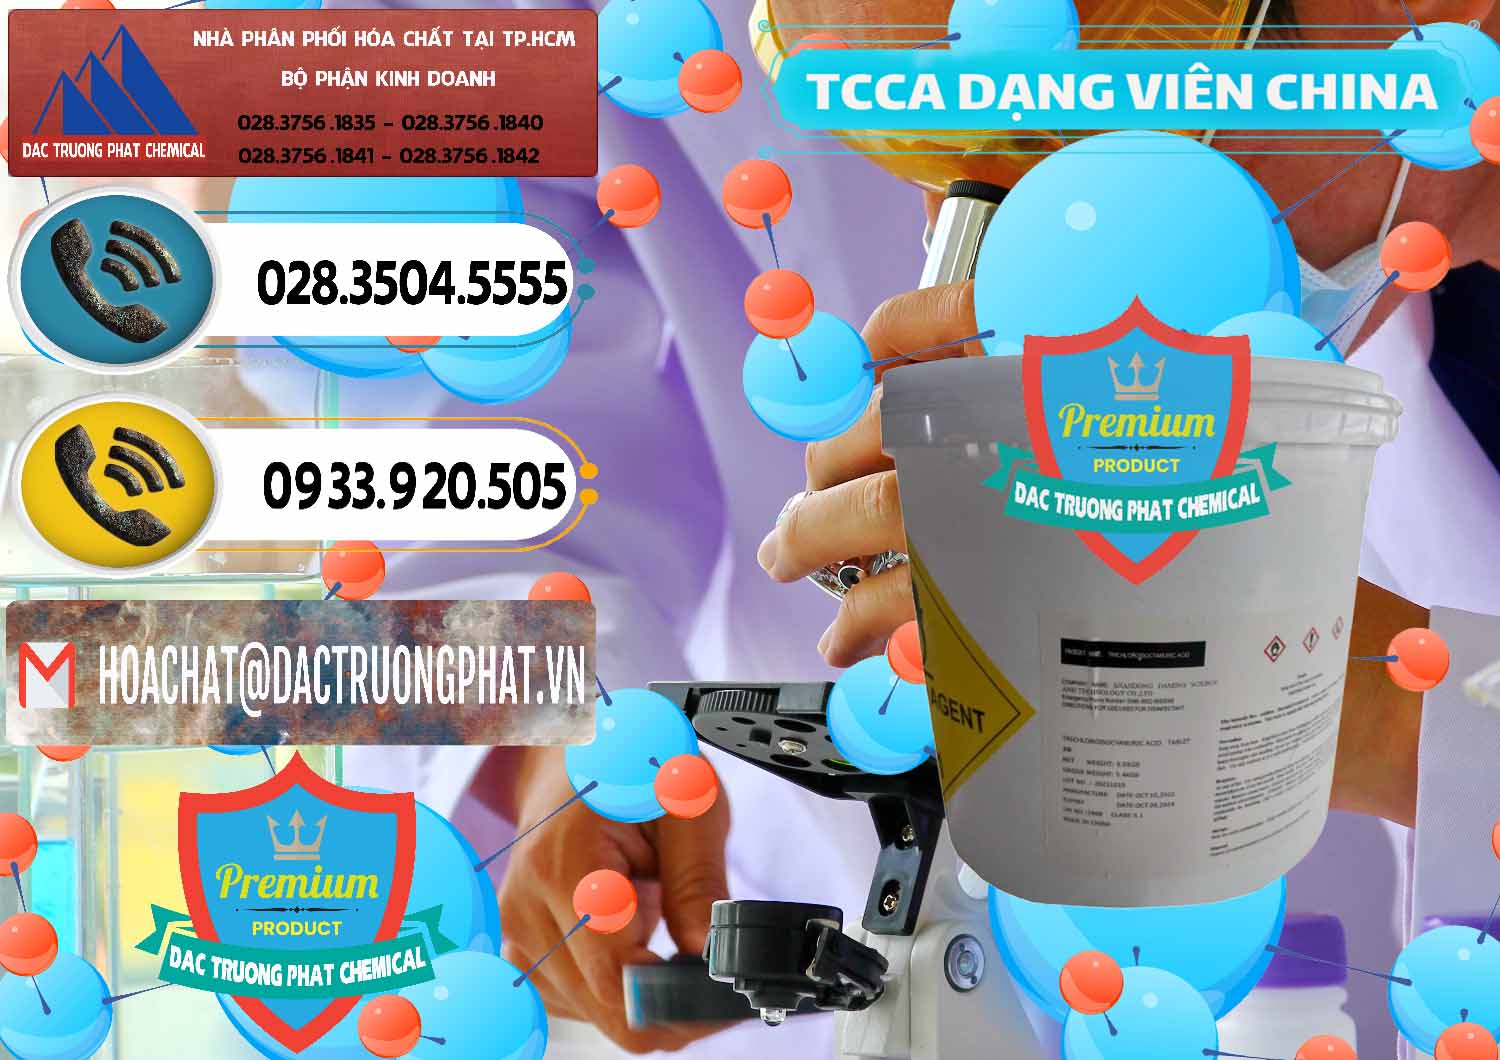 Đơn vị bán và cung ứng TCCA - Acid Trichloroisocyanuric Dạng Viên Thùng 5kg Trung Quốc China - 0379 - Công ty bán _ phân phối hóa chất tại TP.HCM - hoachatdetnhuom.vn